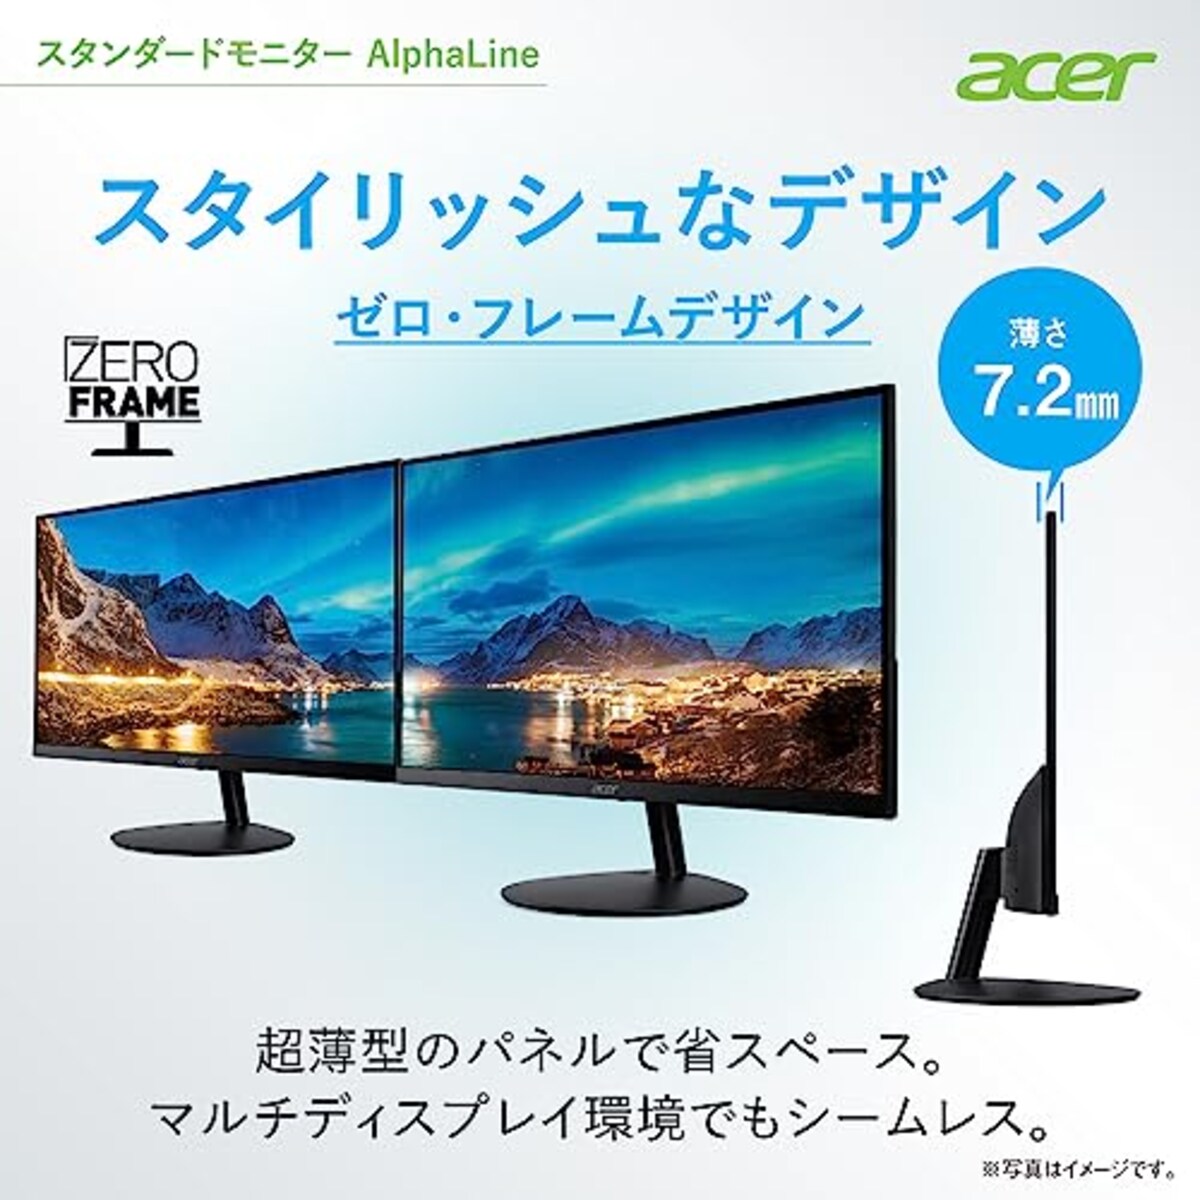  日本エイサー 【Amazon.co.jp限定】 Acer スタンダードモニター 27インチ IPS 非光沢 フルHD 100Hz 1ms HDMI ミニD-Sub15 VESAマウント対応 スピーカー内蔵 ヘッドホン端子 AMD FreeSync SA272Ebmix画像4 